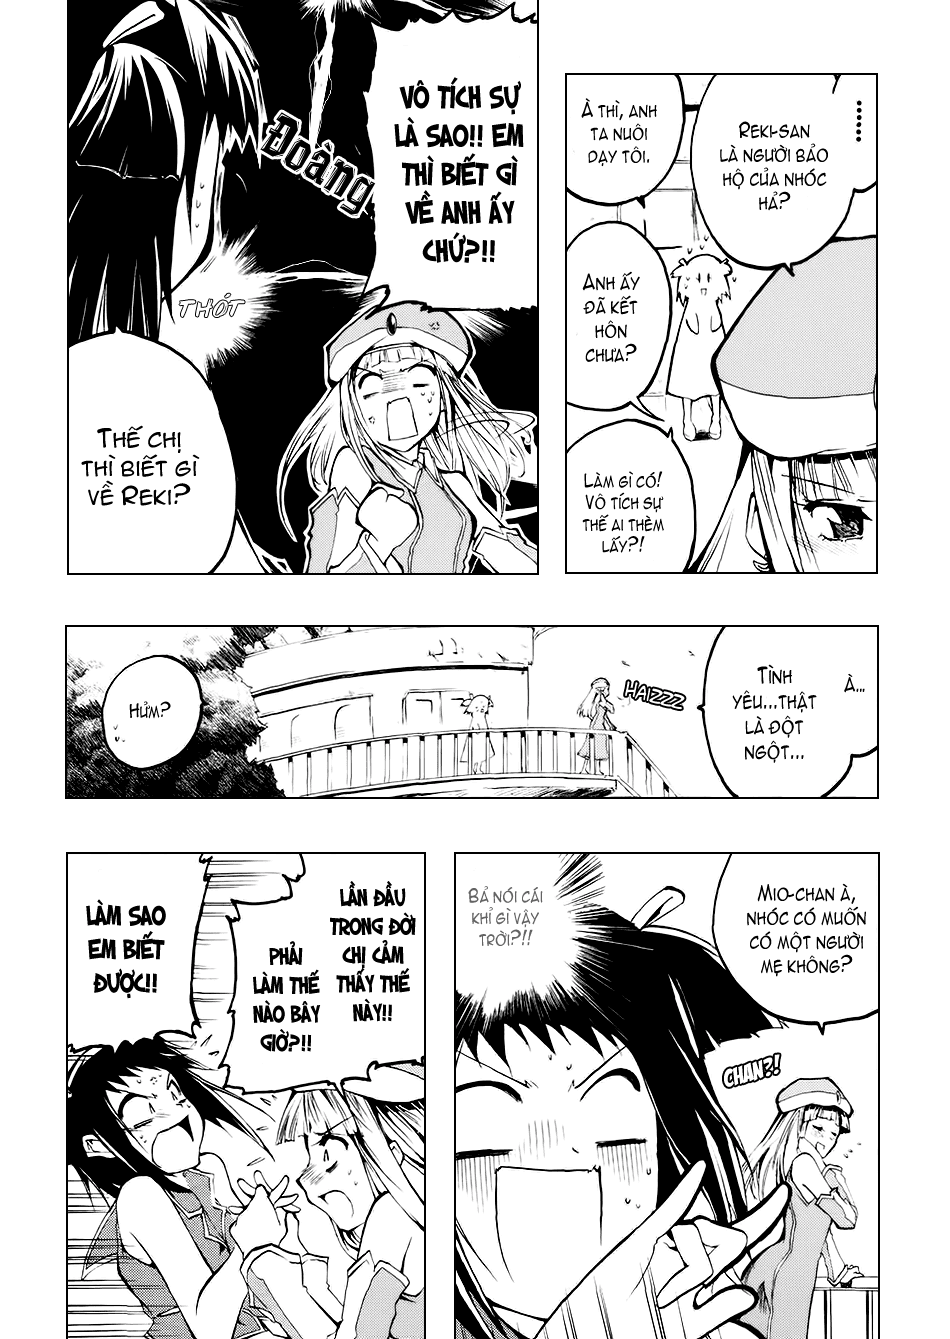 [Manga]: Esprit 0035